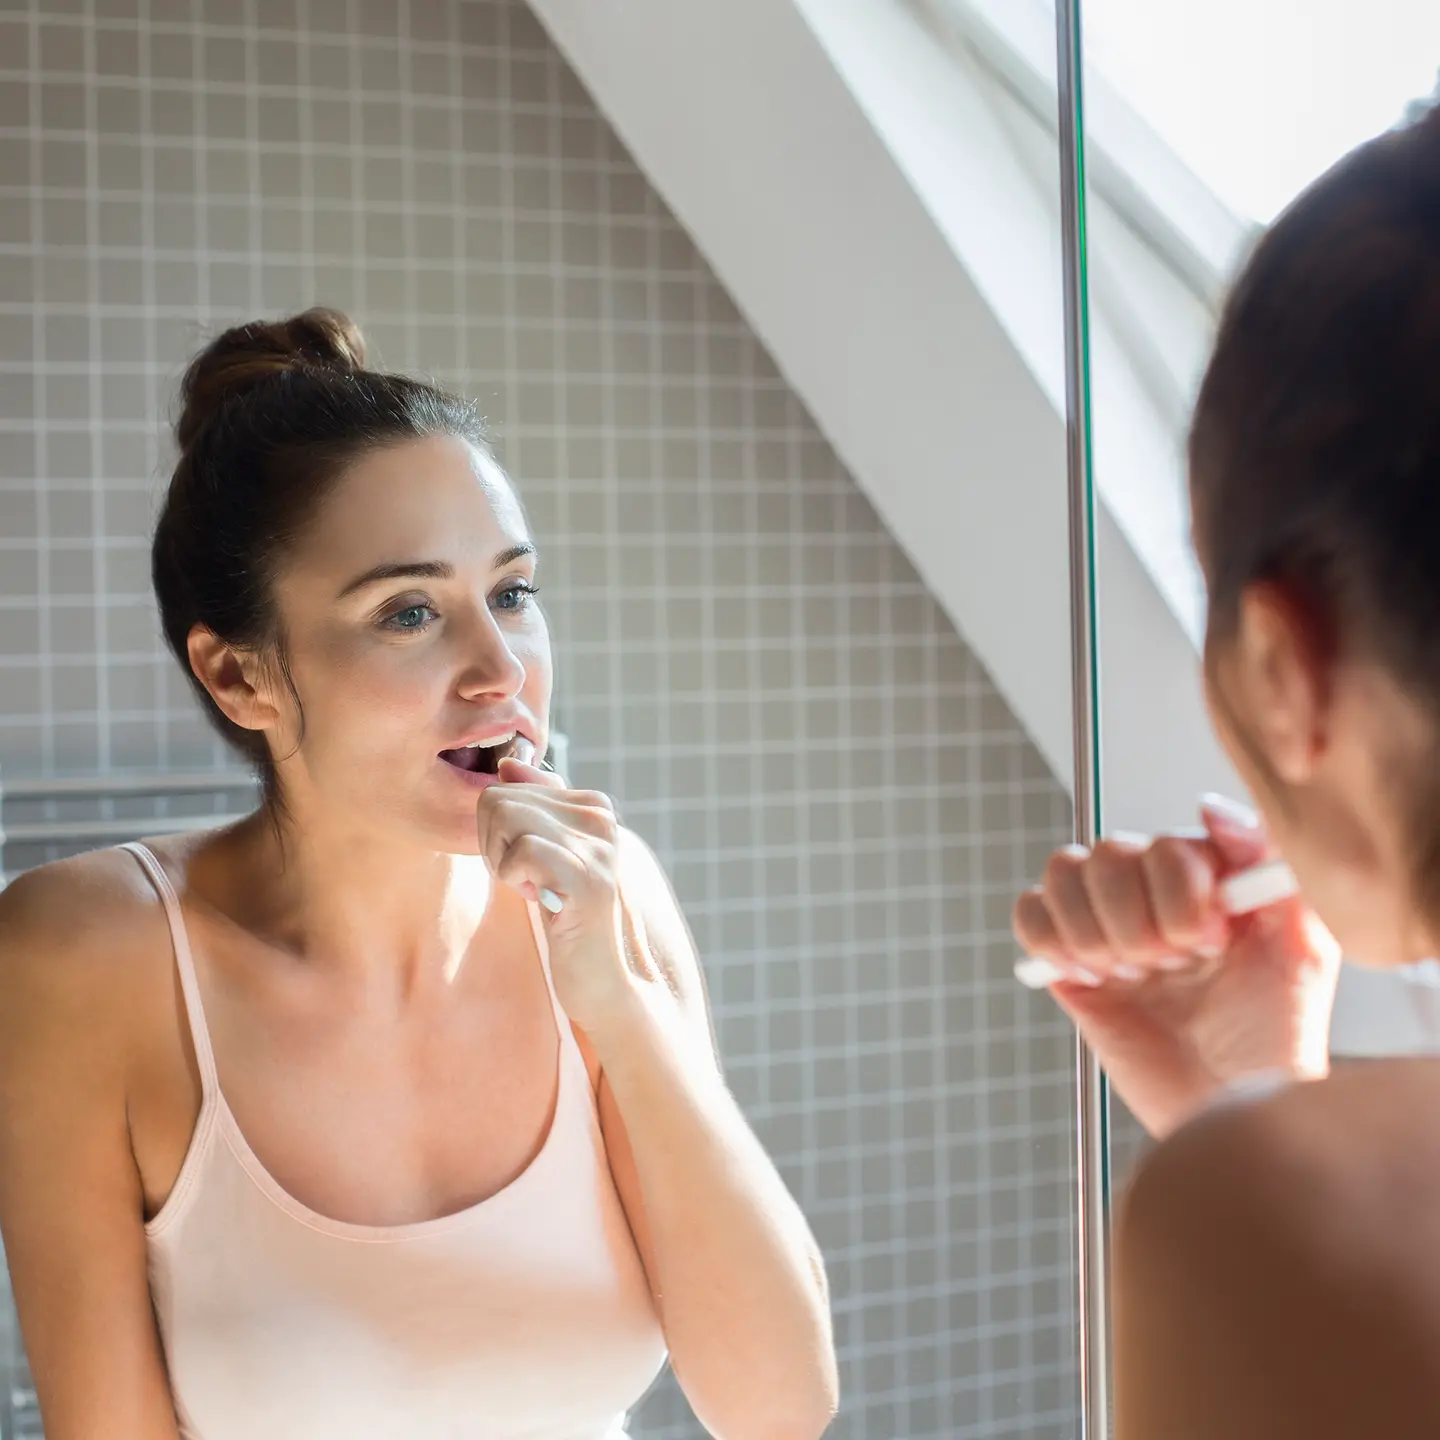 Junge Frau steht im Bad vor dem Spiegel und putzt sich die Zähne